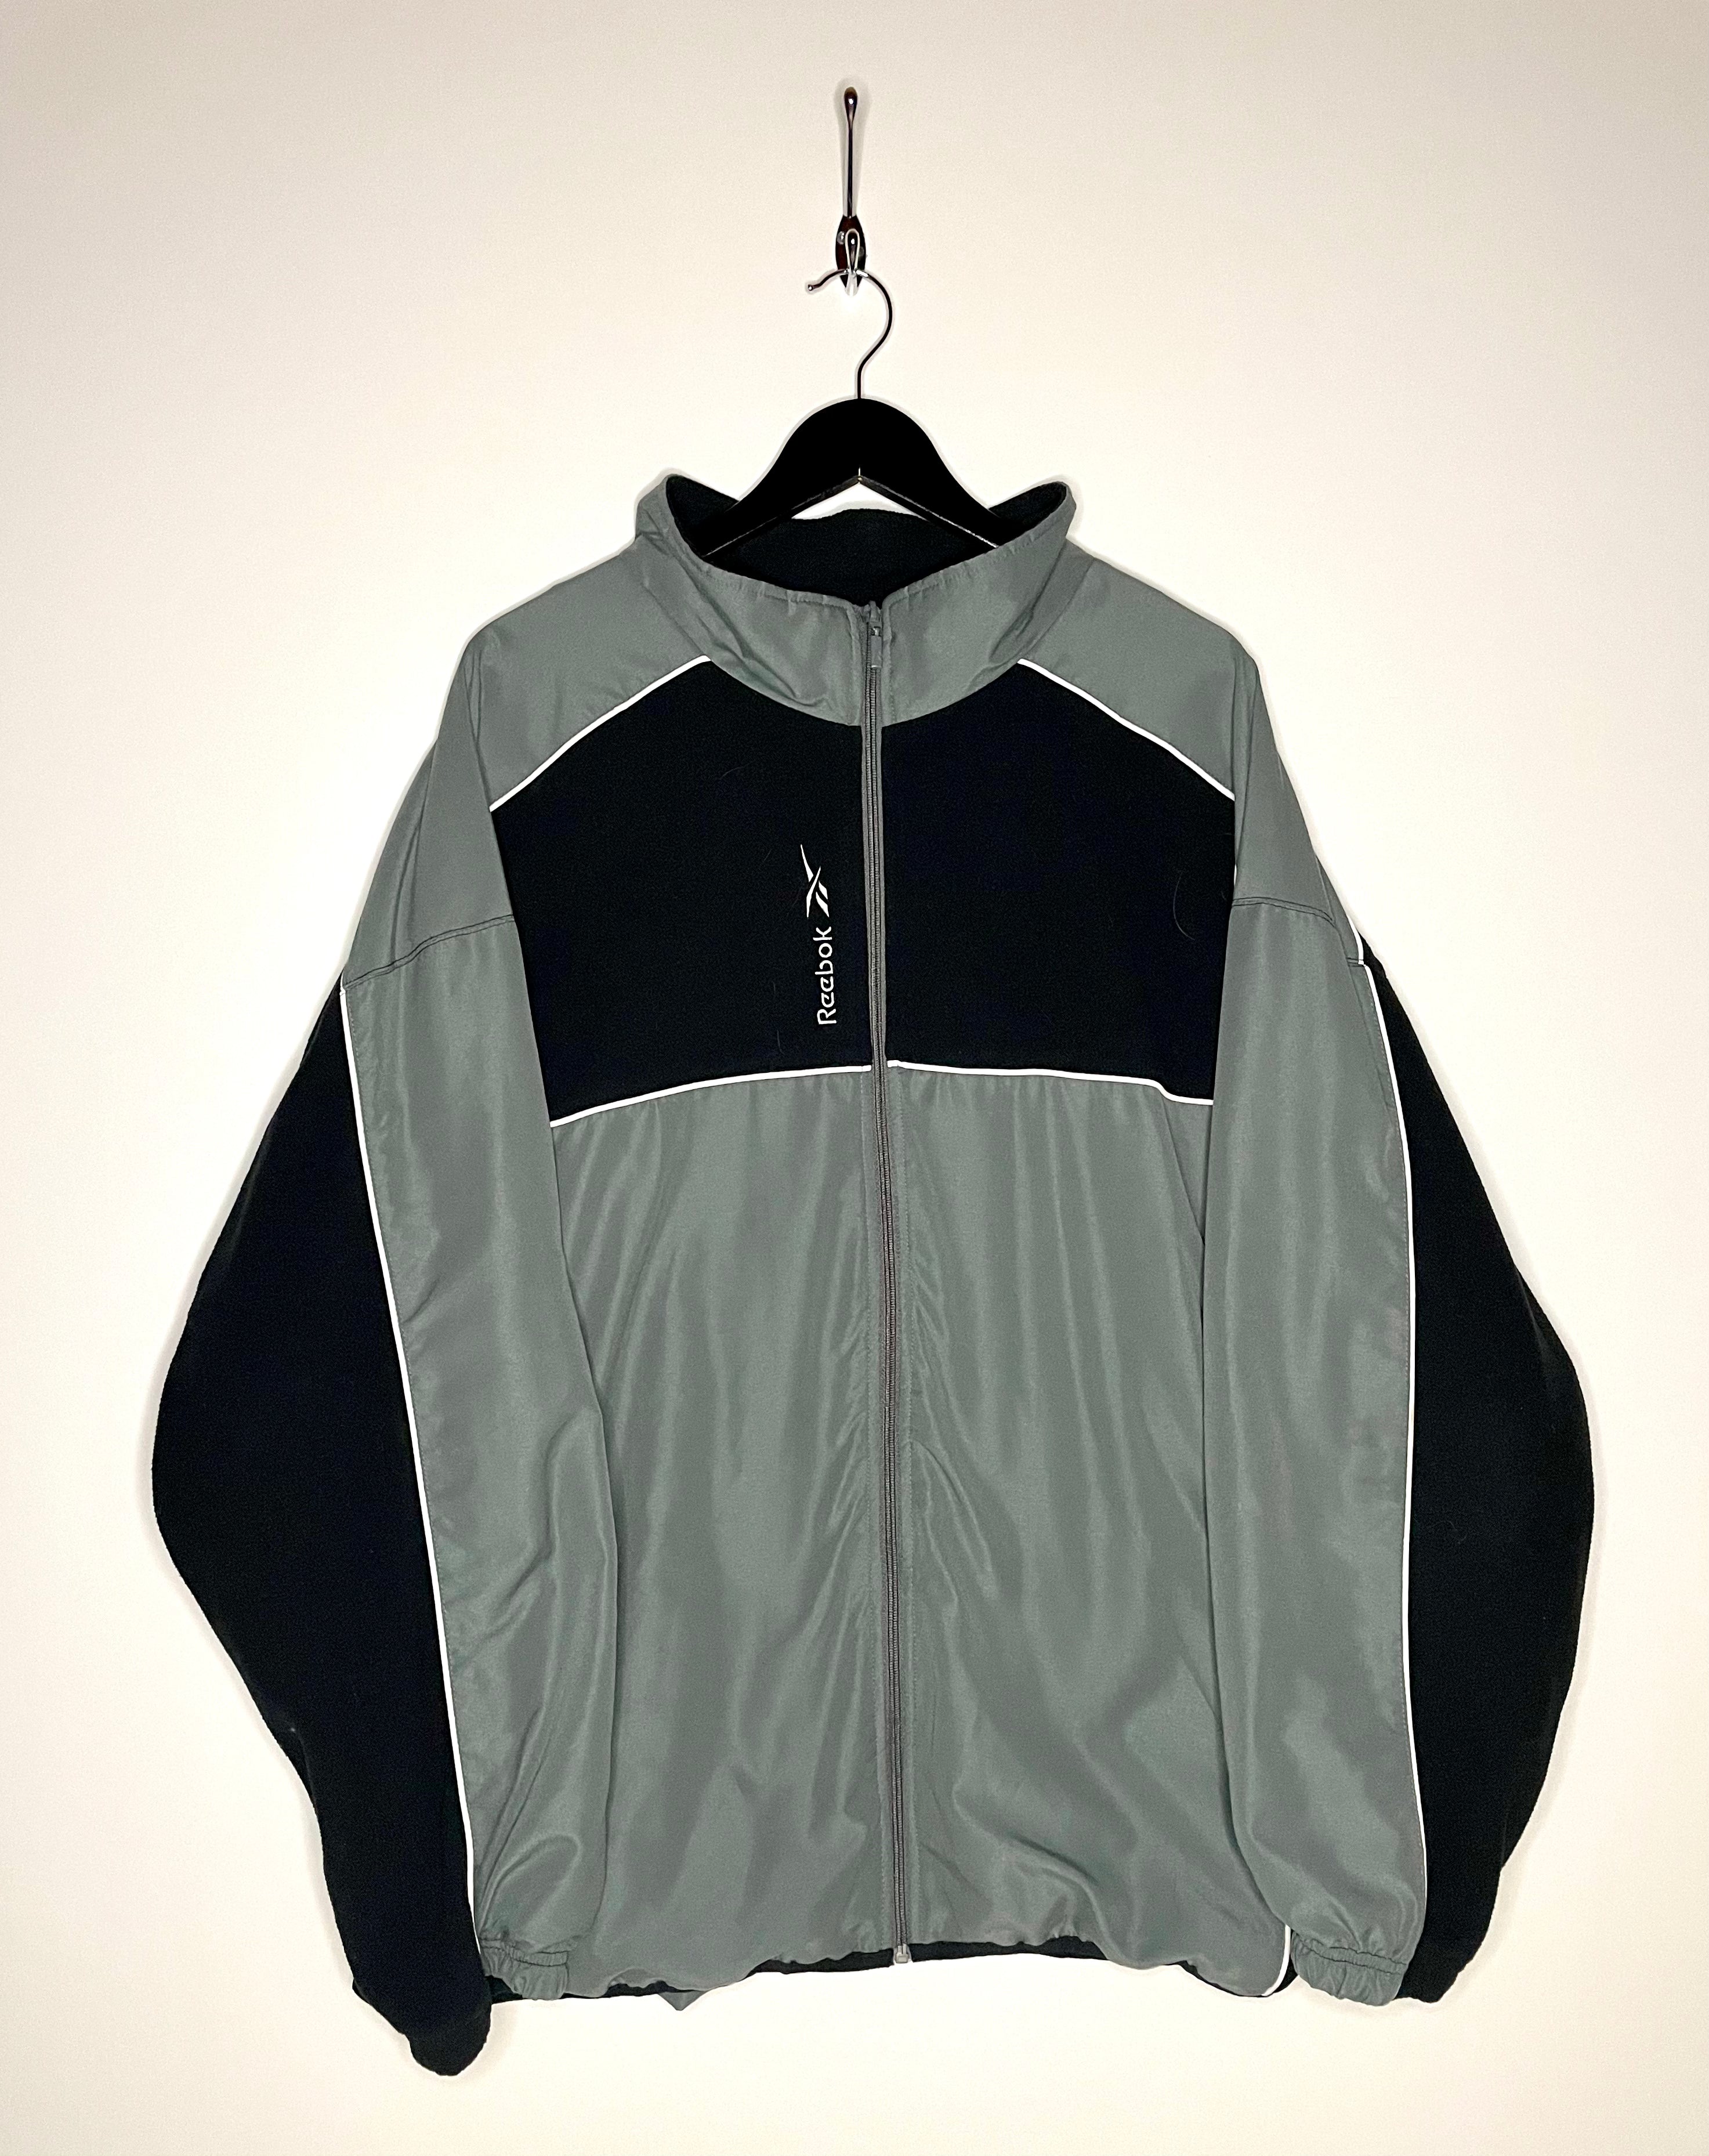 Reebok Vintage Training Jacket Fleece Grey/Black Size XXL